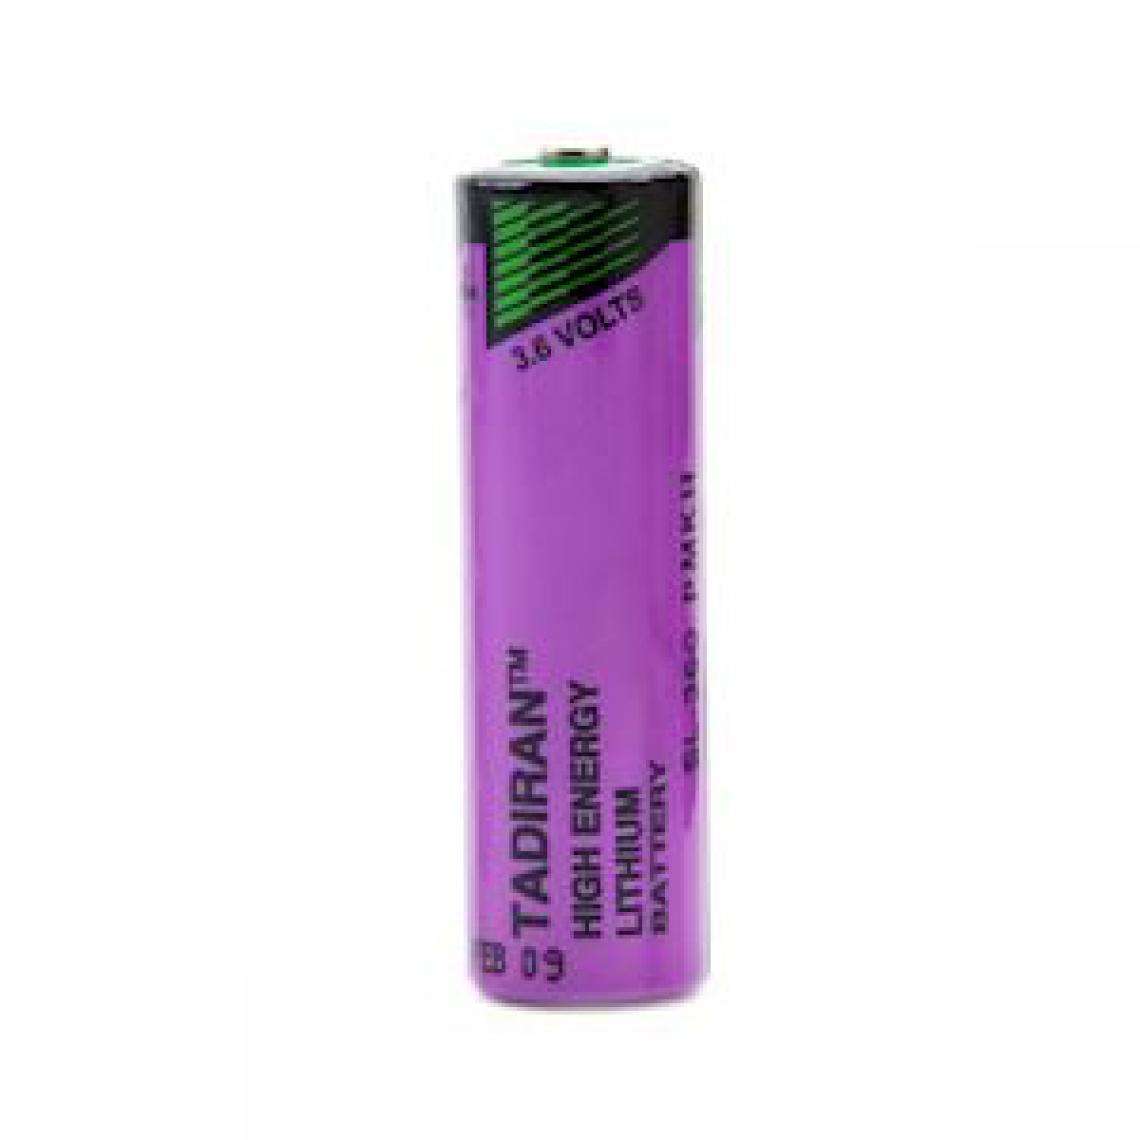 Enix Energie - pile lithium - sl-360/s - aa - 3.6 volts - 2.4ah - enix energies pcl8016b - Piles rechargeables